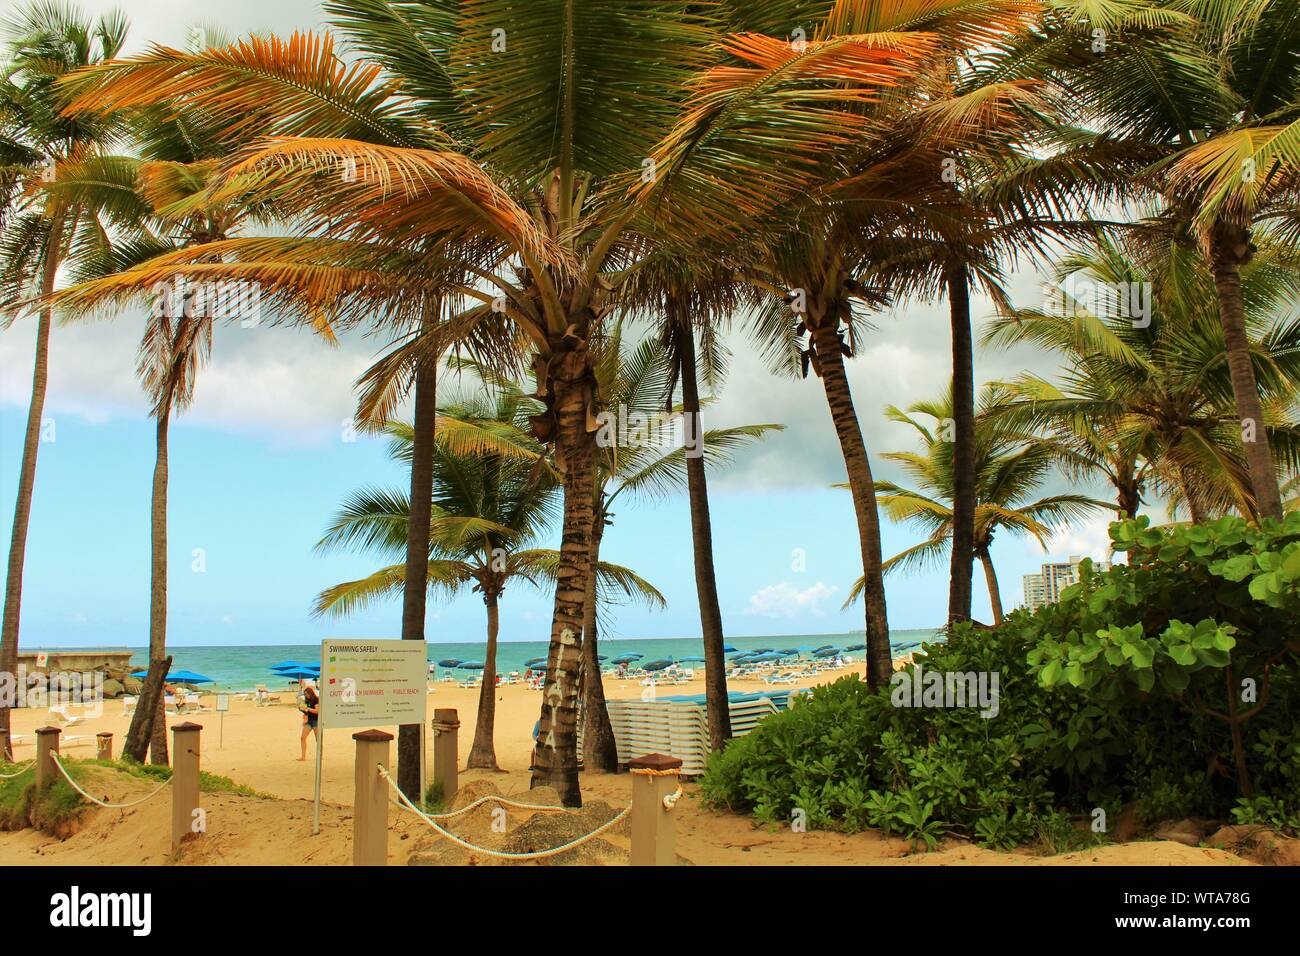 Eingang zum Condado Playa Concha öffentlichen Strand, in der Nähe von Ashford Avenue, an der nördlichen Küste von Puerto Rico. Stockfoto